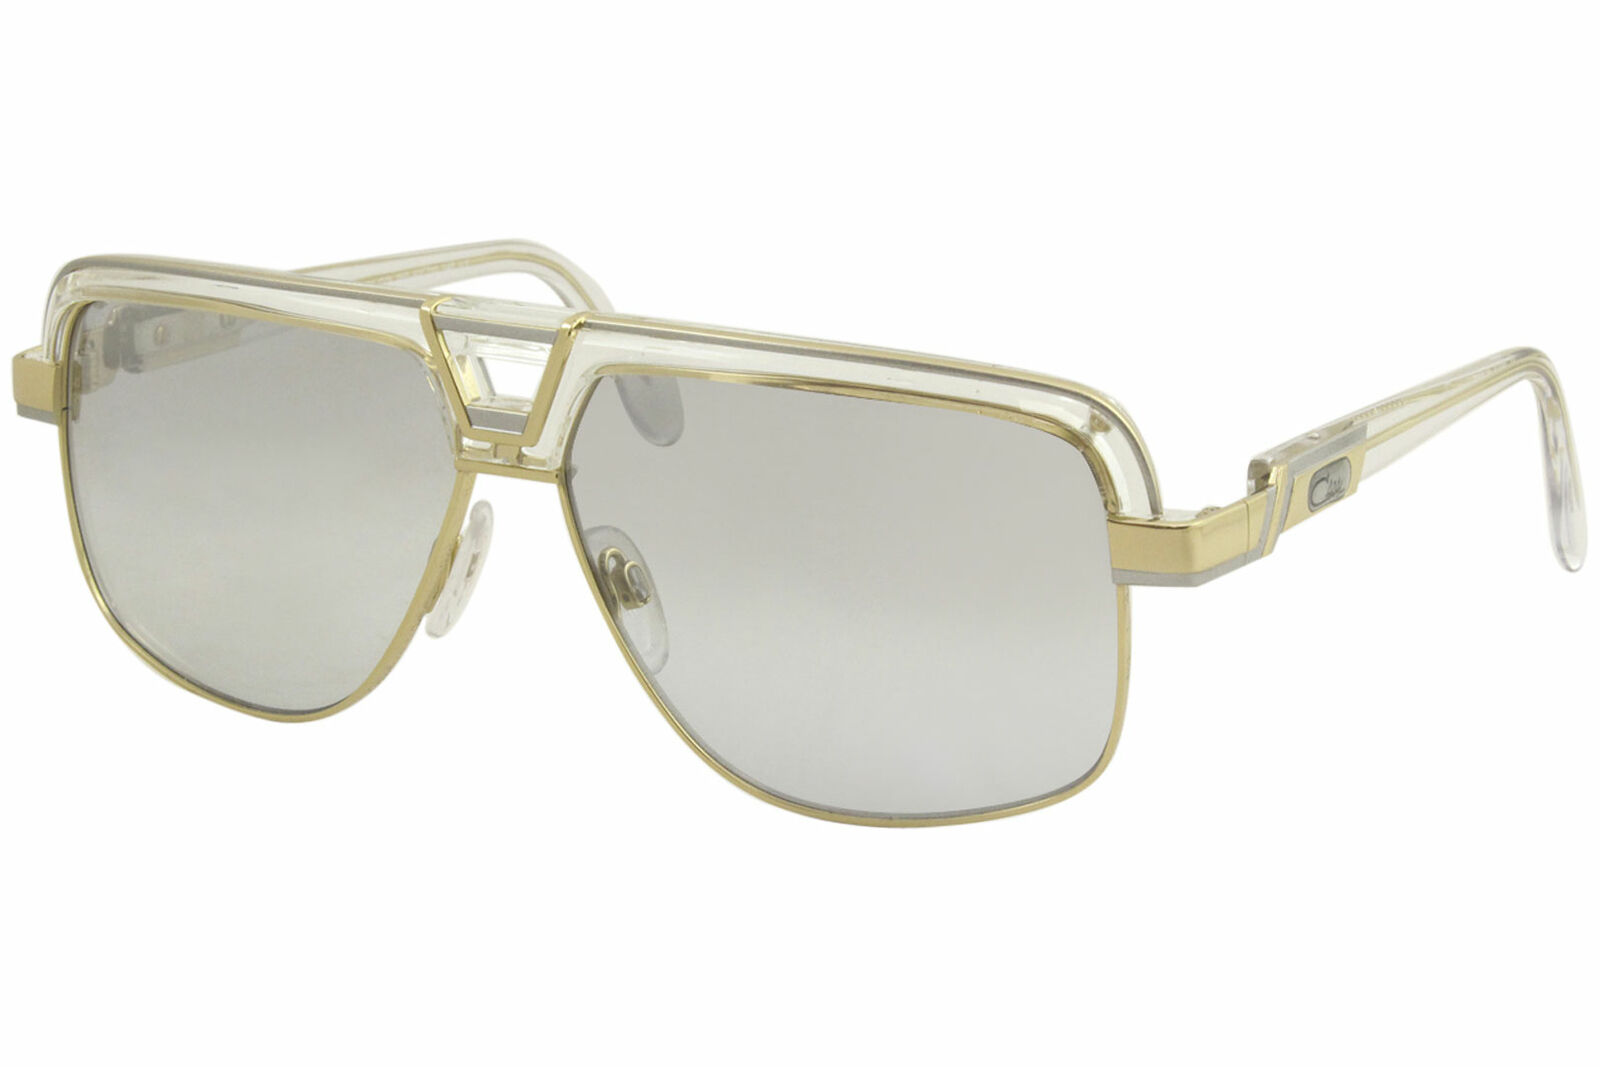 Cazal Legends 991 003 Sunglasses Men's Crystal-White-Gold/Grey Grad Lenses  62mm